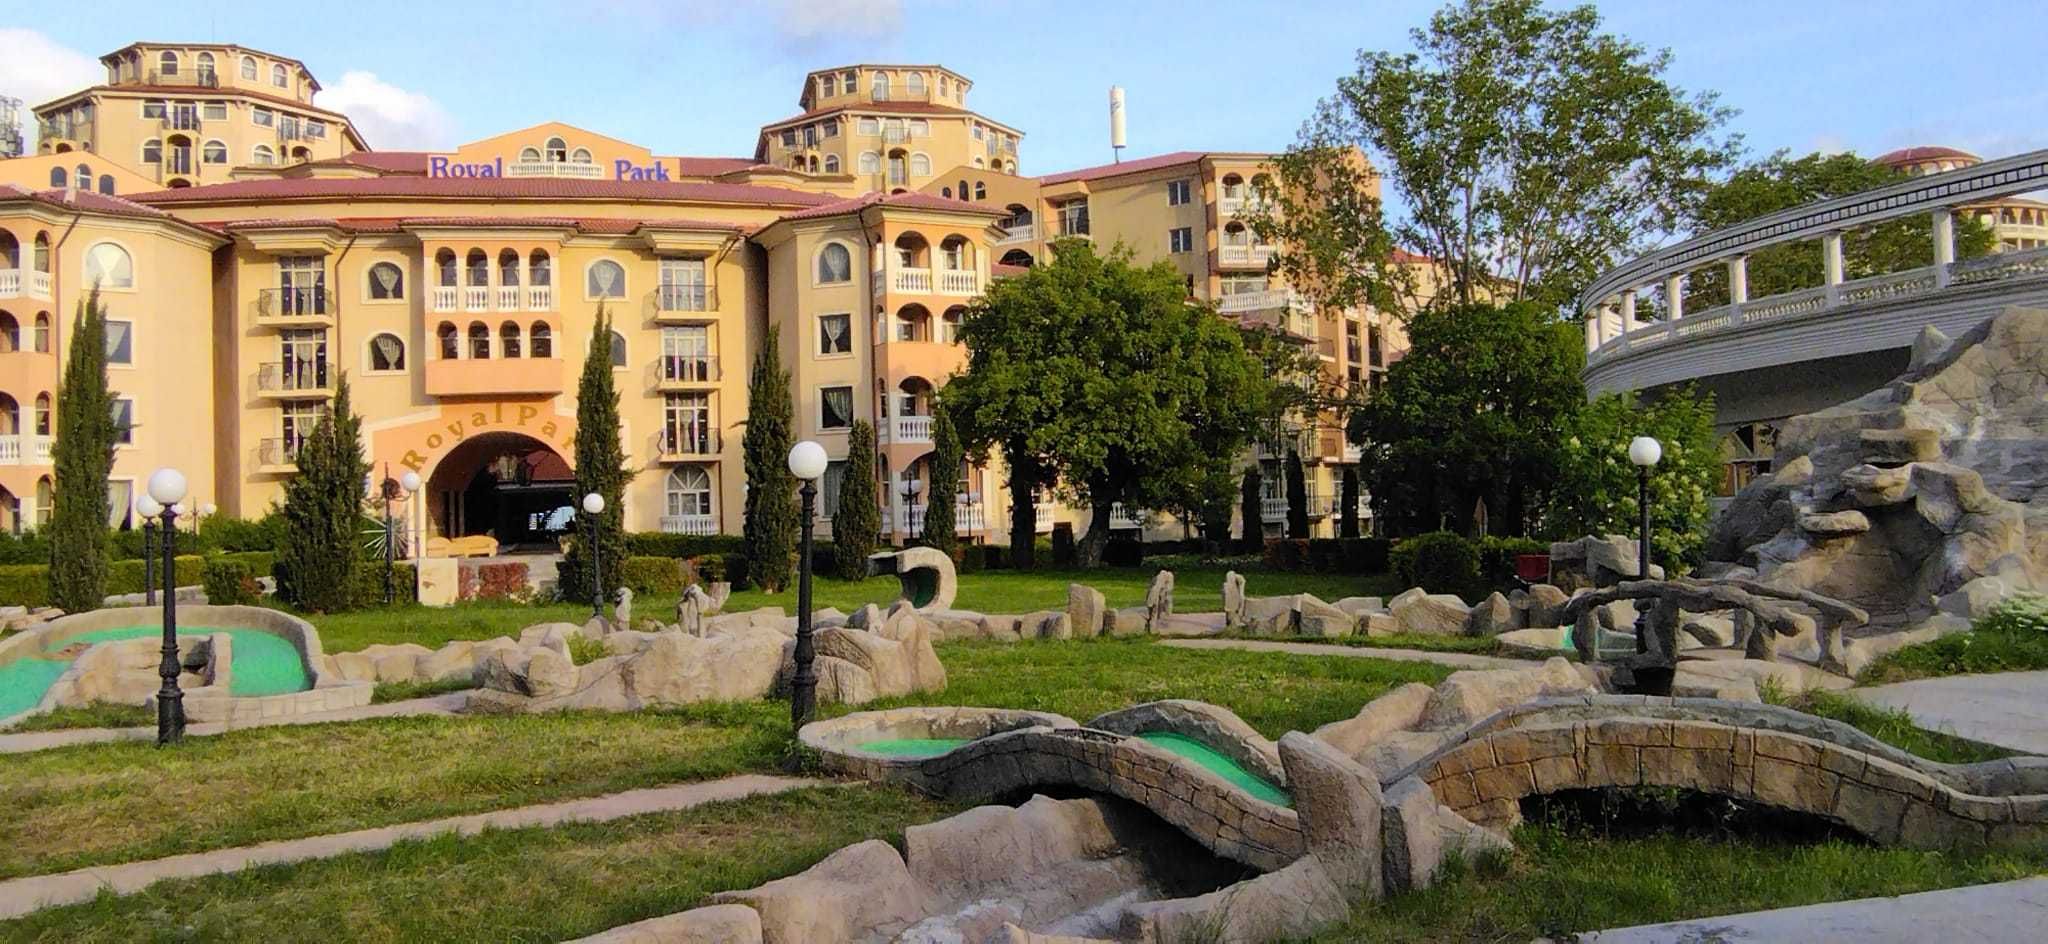 Piękny apartament do wynajęcia na wakacje  w Bułgarii w Elenite